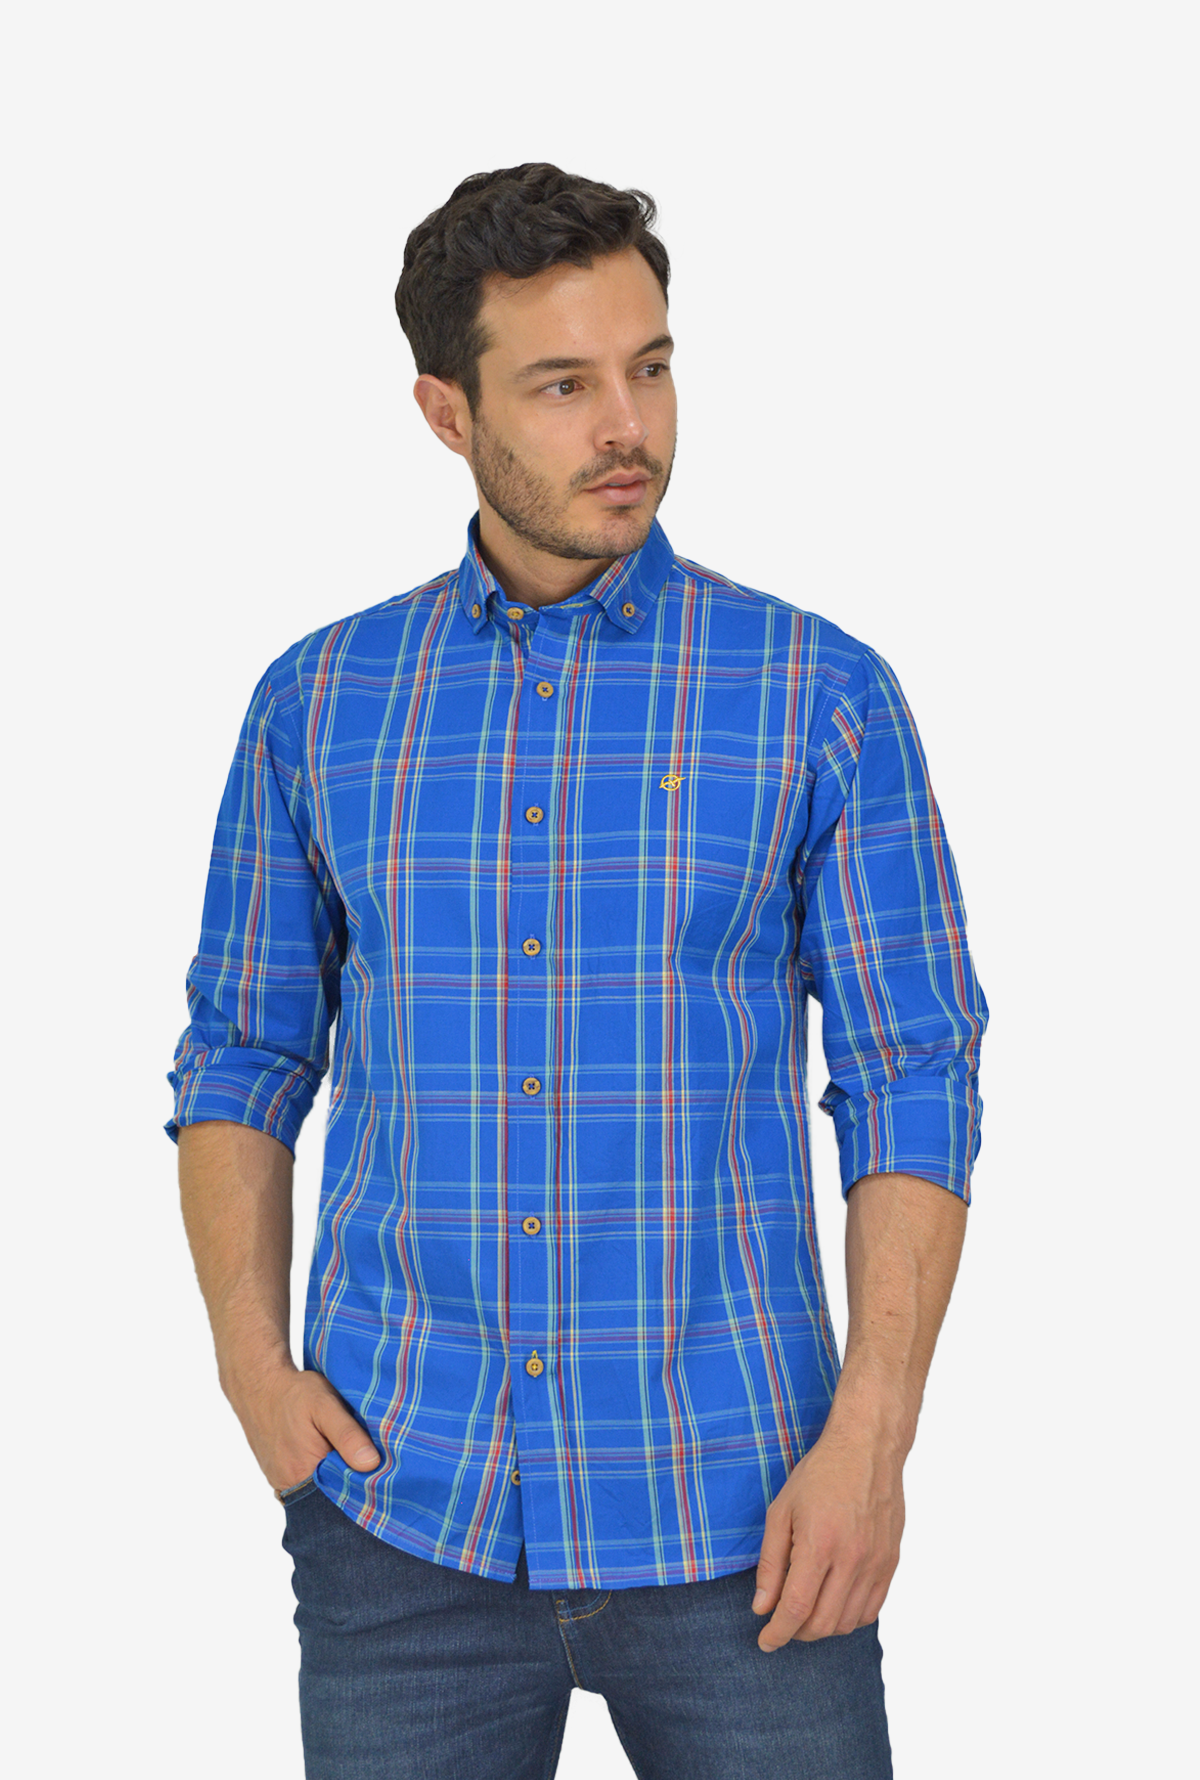 Camisa manga larga Azul a cuadros para hombre DMCMLM15